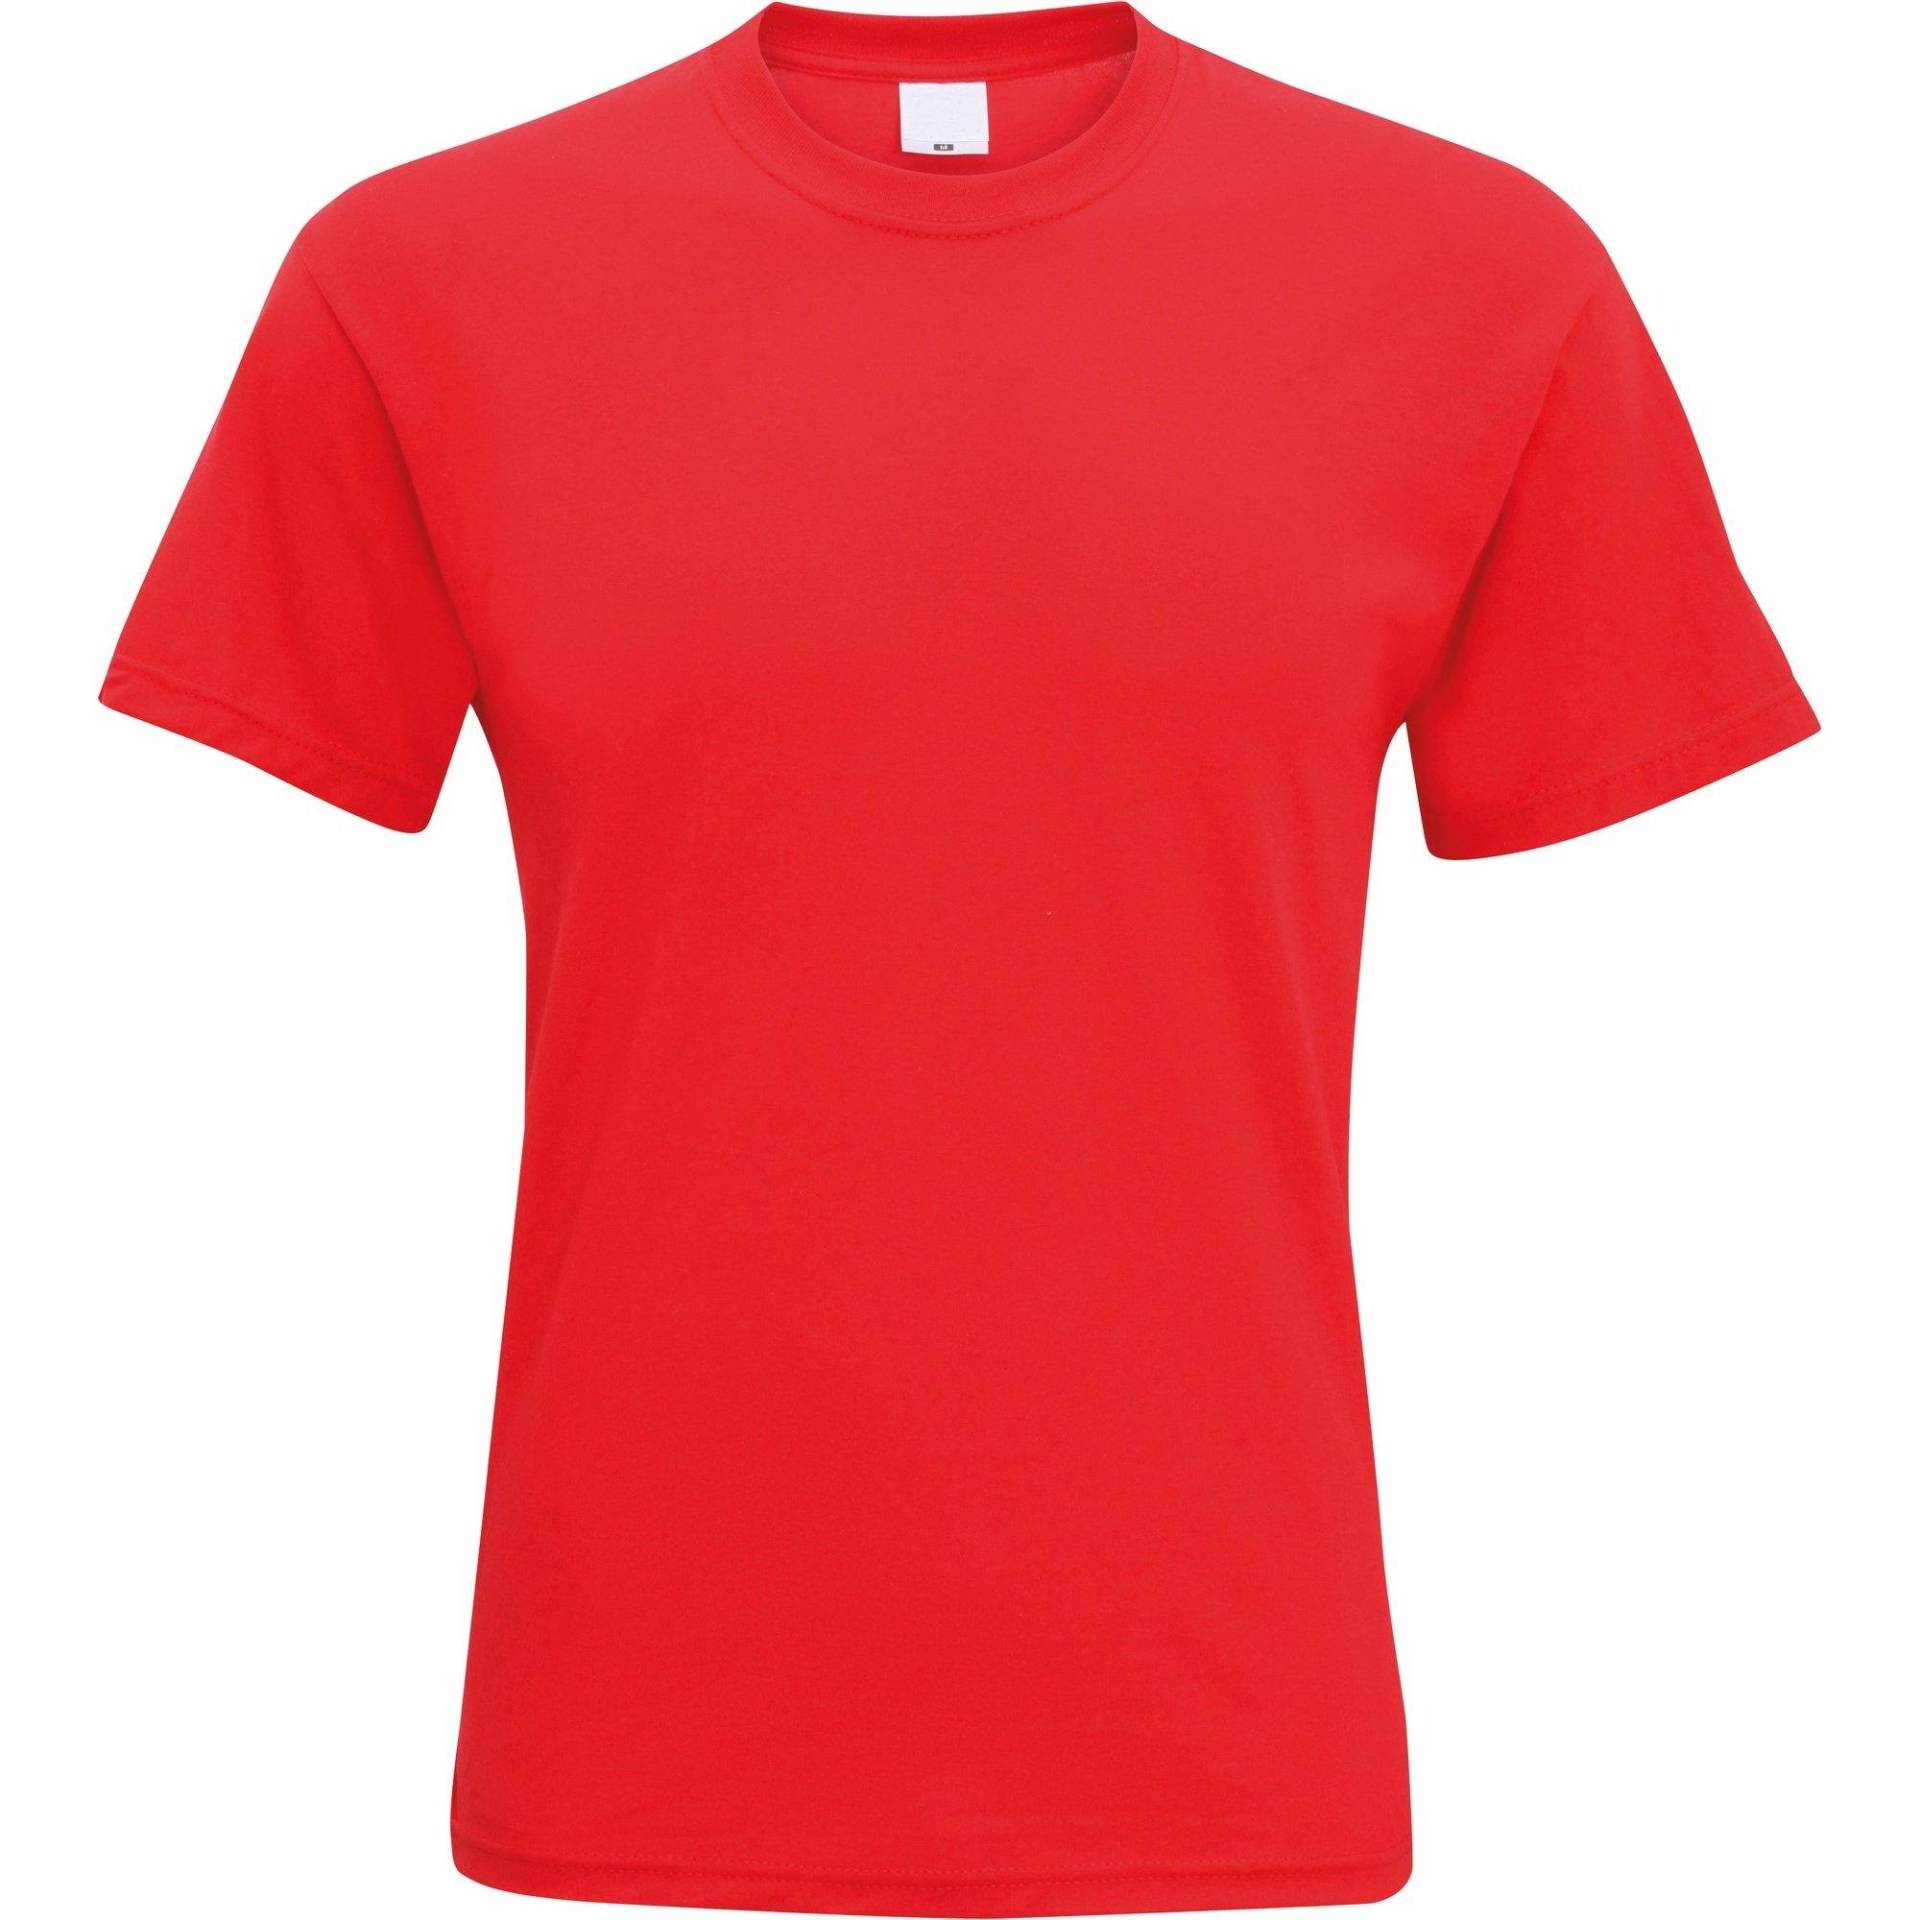 Kurzarm Freizeit Tshirt Herren Rot Bunt S von Universal Textiles